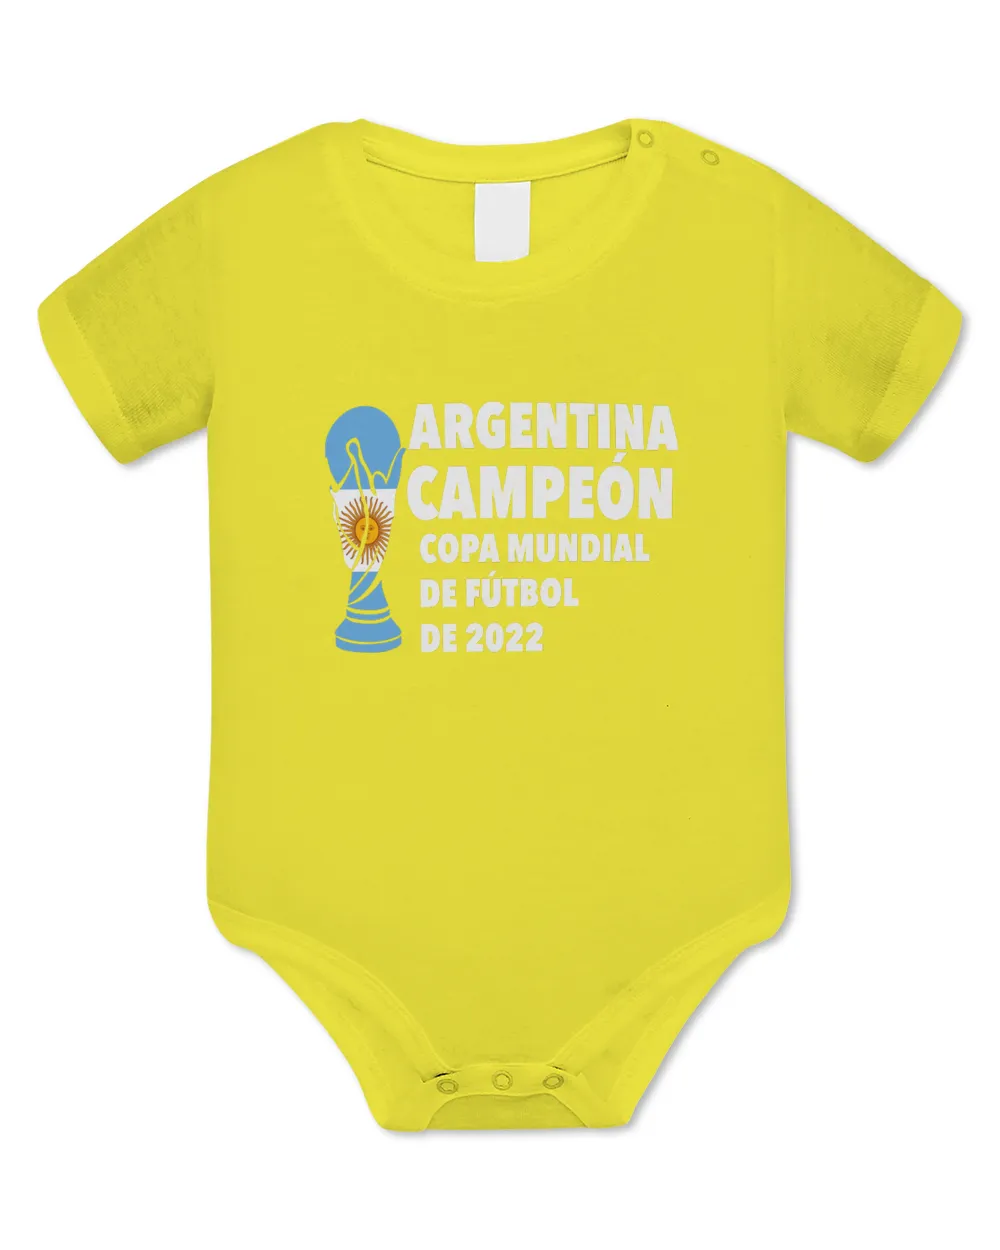 Argentina Copa Mundial de Fútbol de 2022